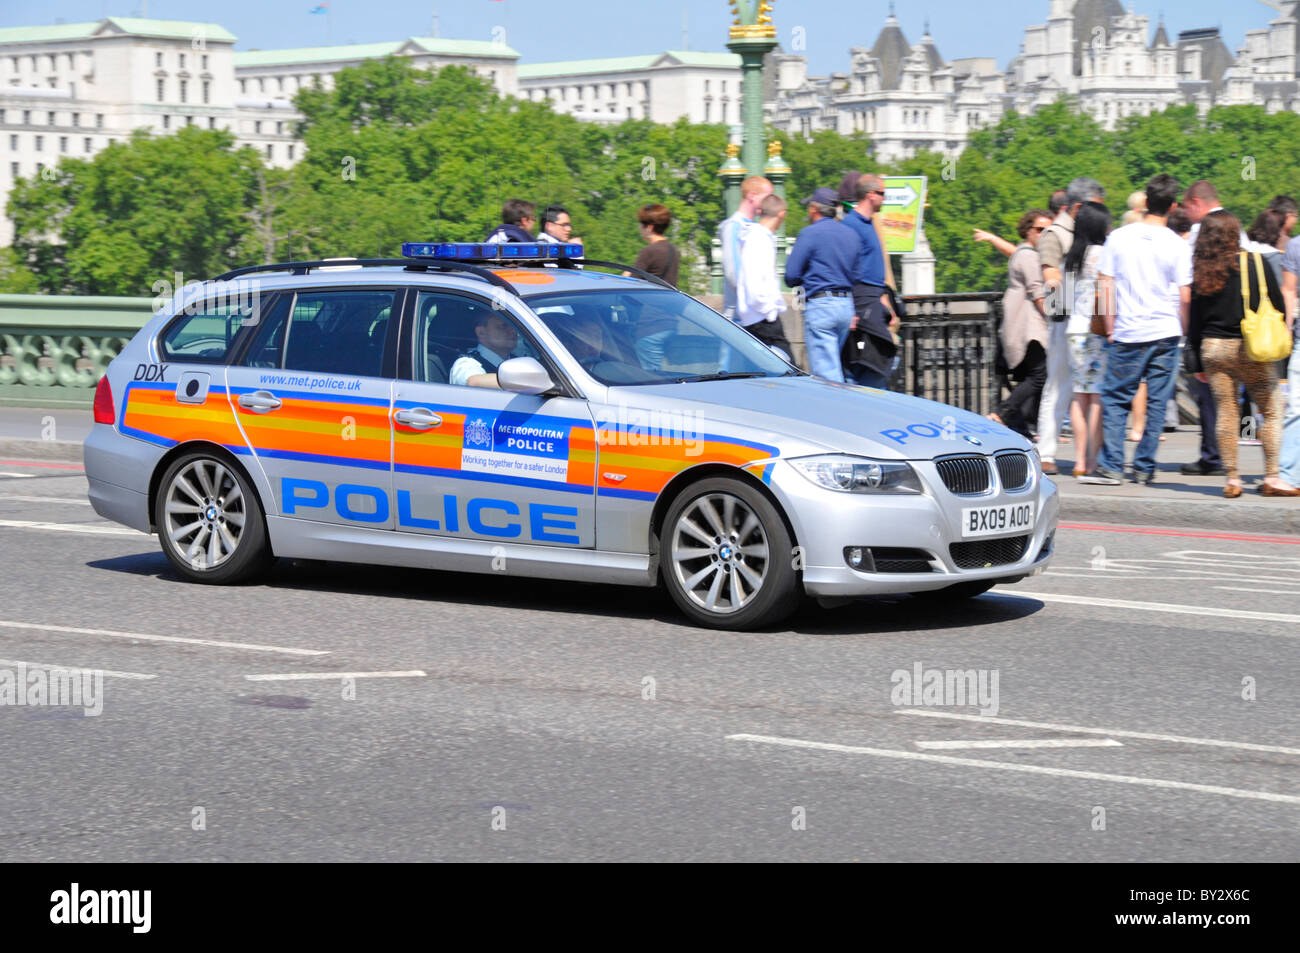 Scena di strada ufficiali in uniforme nel territorio metropolitano della pattuglia di polizia guida su Westminster Bridge con un gruppo di turisti oltre Londra Inghilterra REGNO UNITO Foto Stock